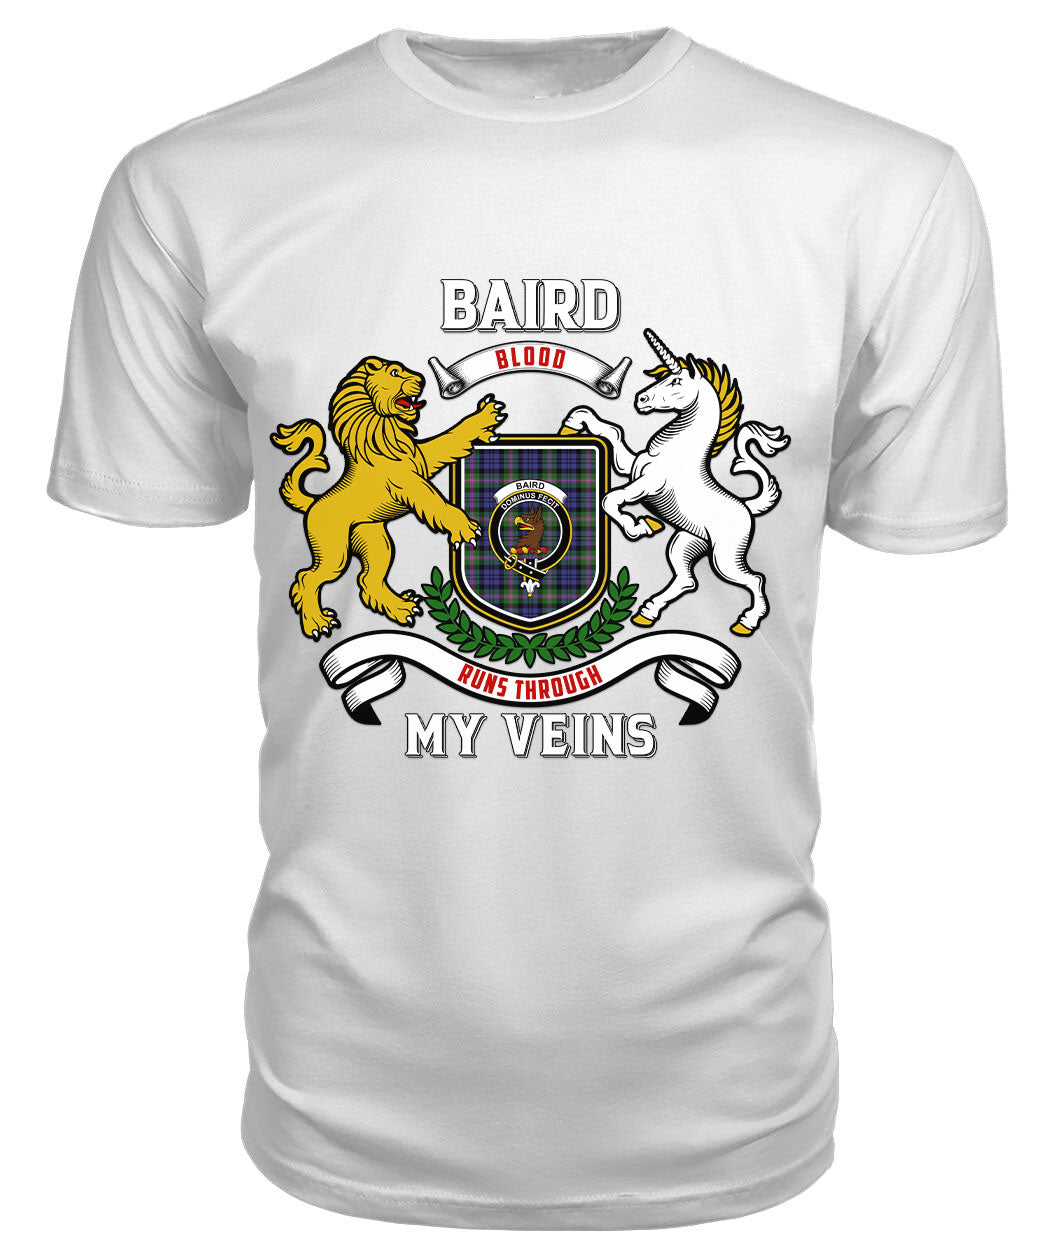 Baird Modern Tartan Crest 2D T-shirt - Blood Runs Through My Veins Style